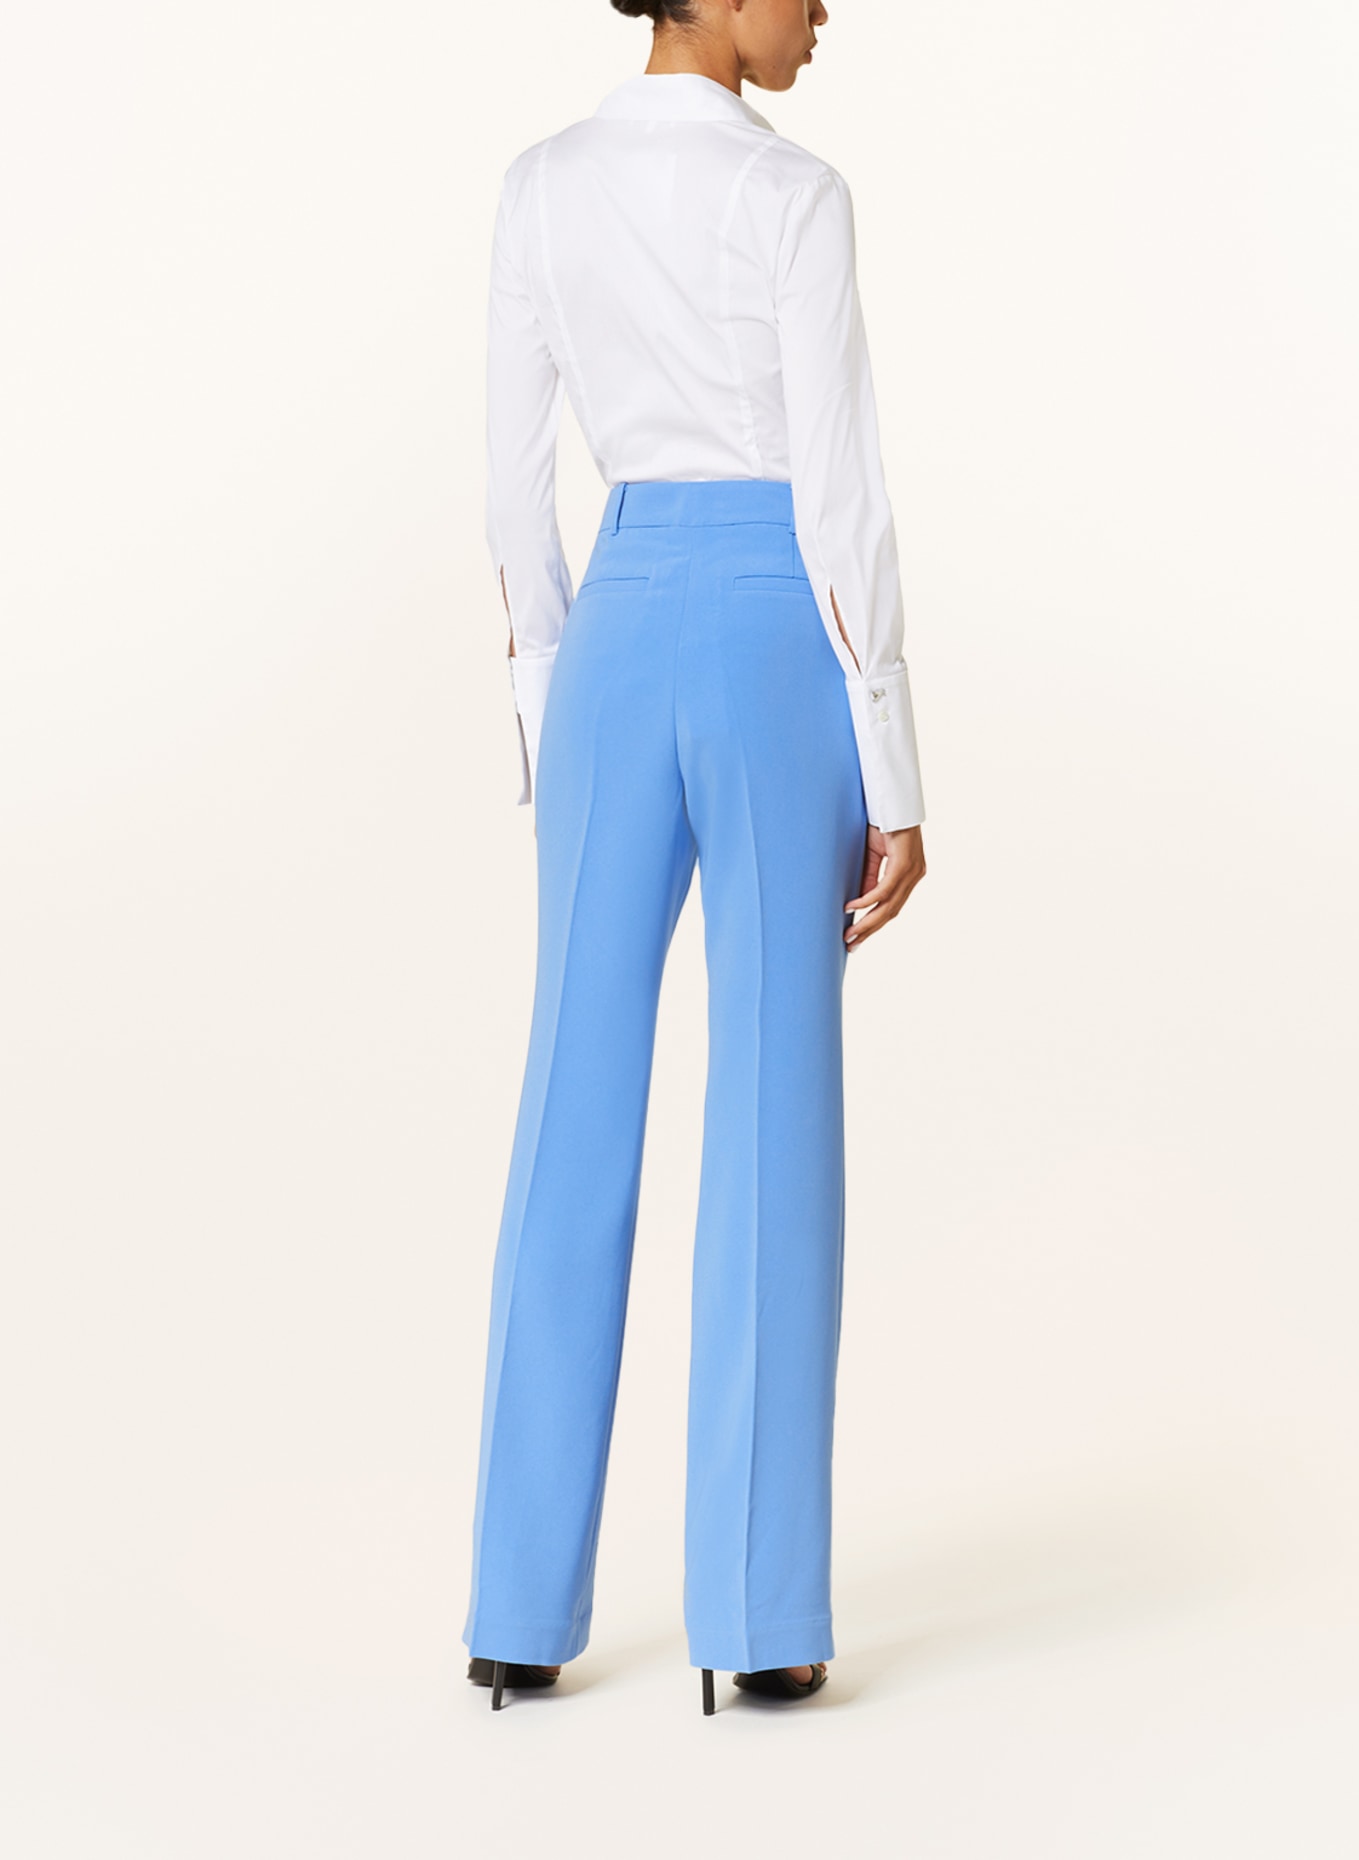 MICHAEL KORS Trousers, Color: LIGHT BLUE (Image 3)